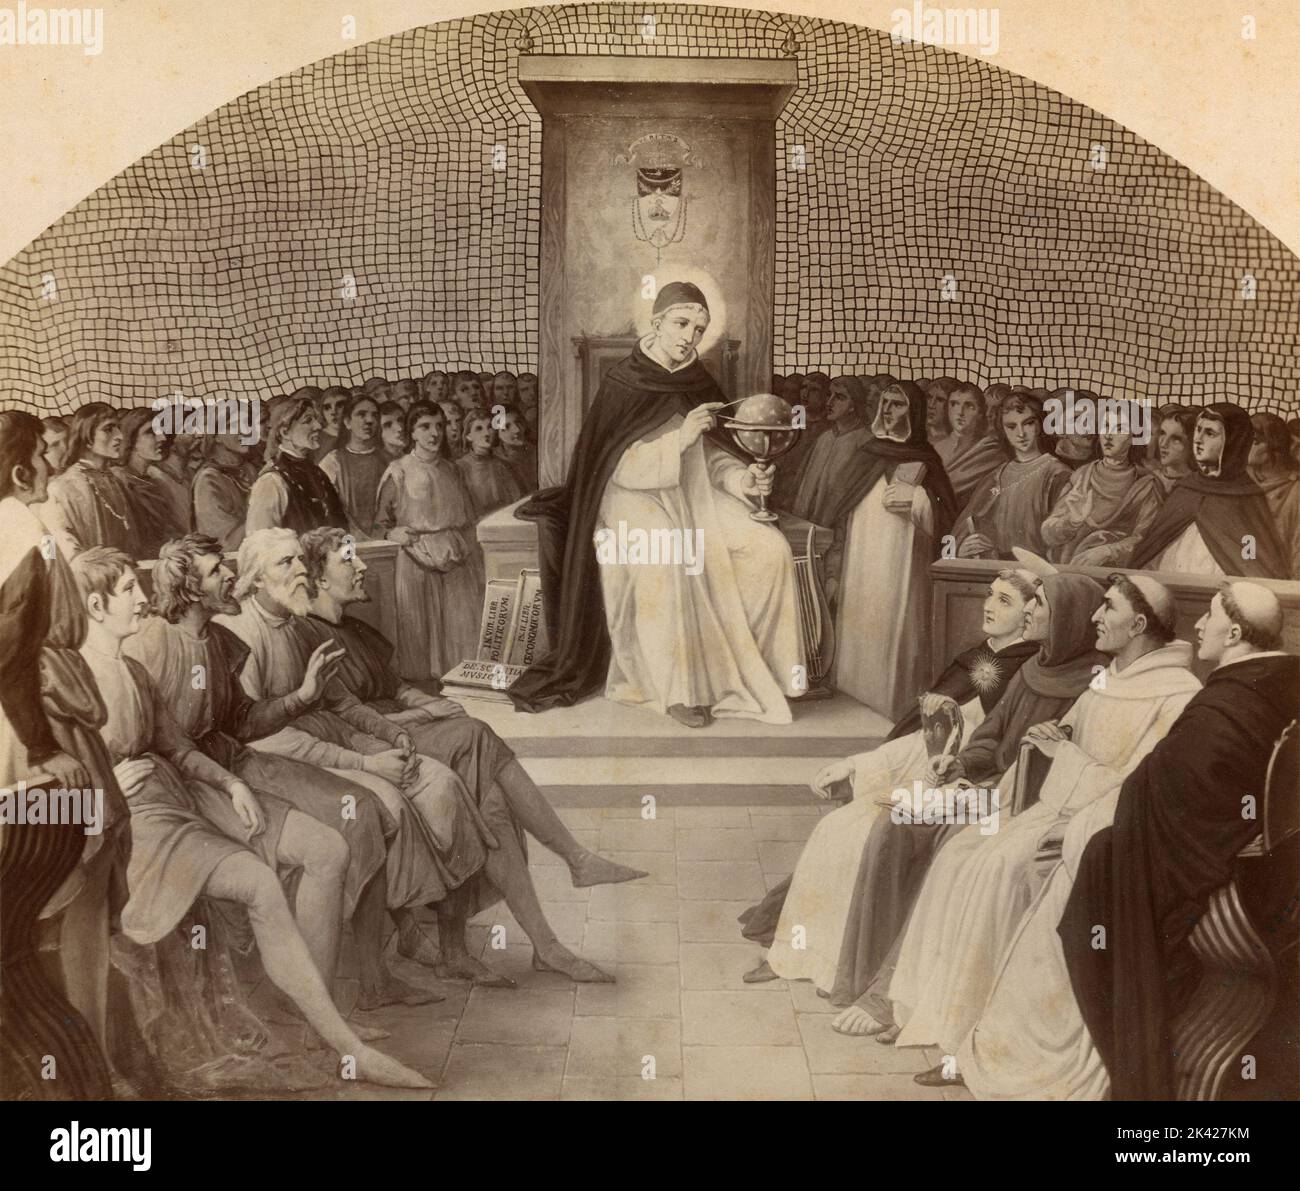 Conseil religieux ancien, congrès des sages prêtres, peinture de l'artiste italien Silverio Capparoni, 1870s Banque D'Images